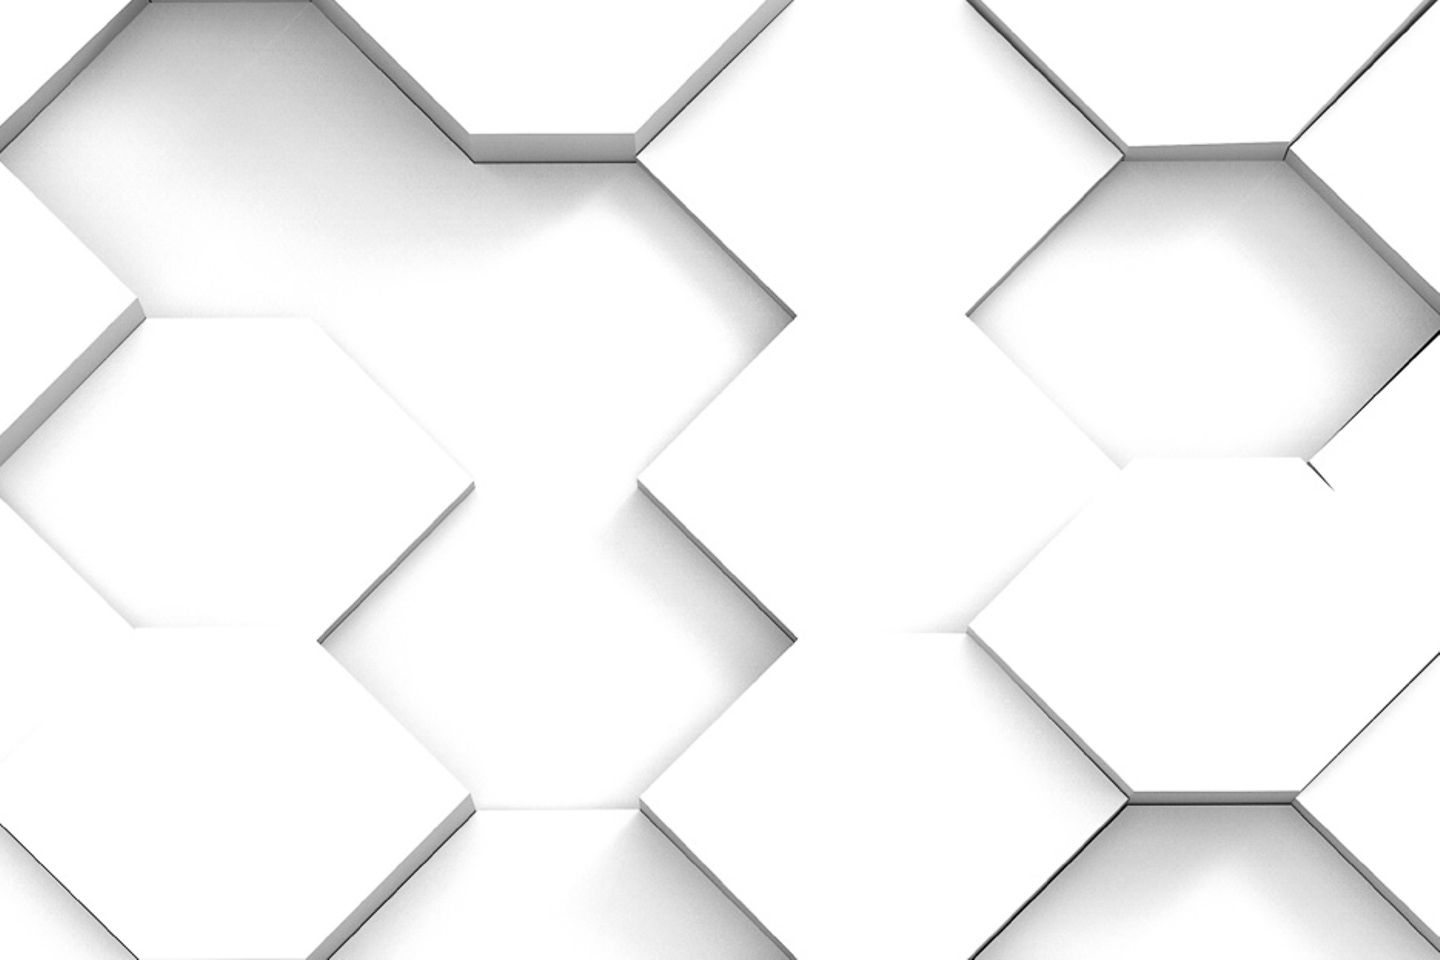 Mosaico o puzle con cajas blancas hexagonales